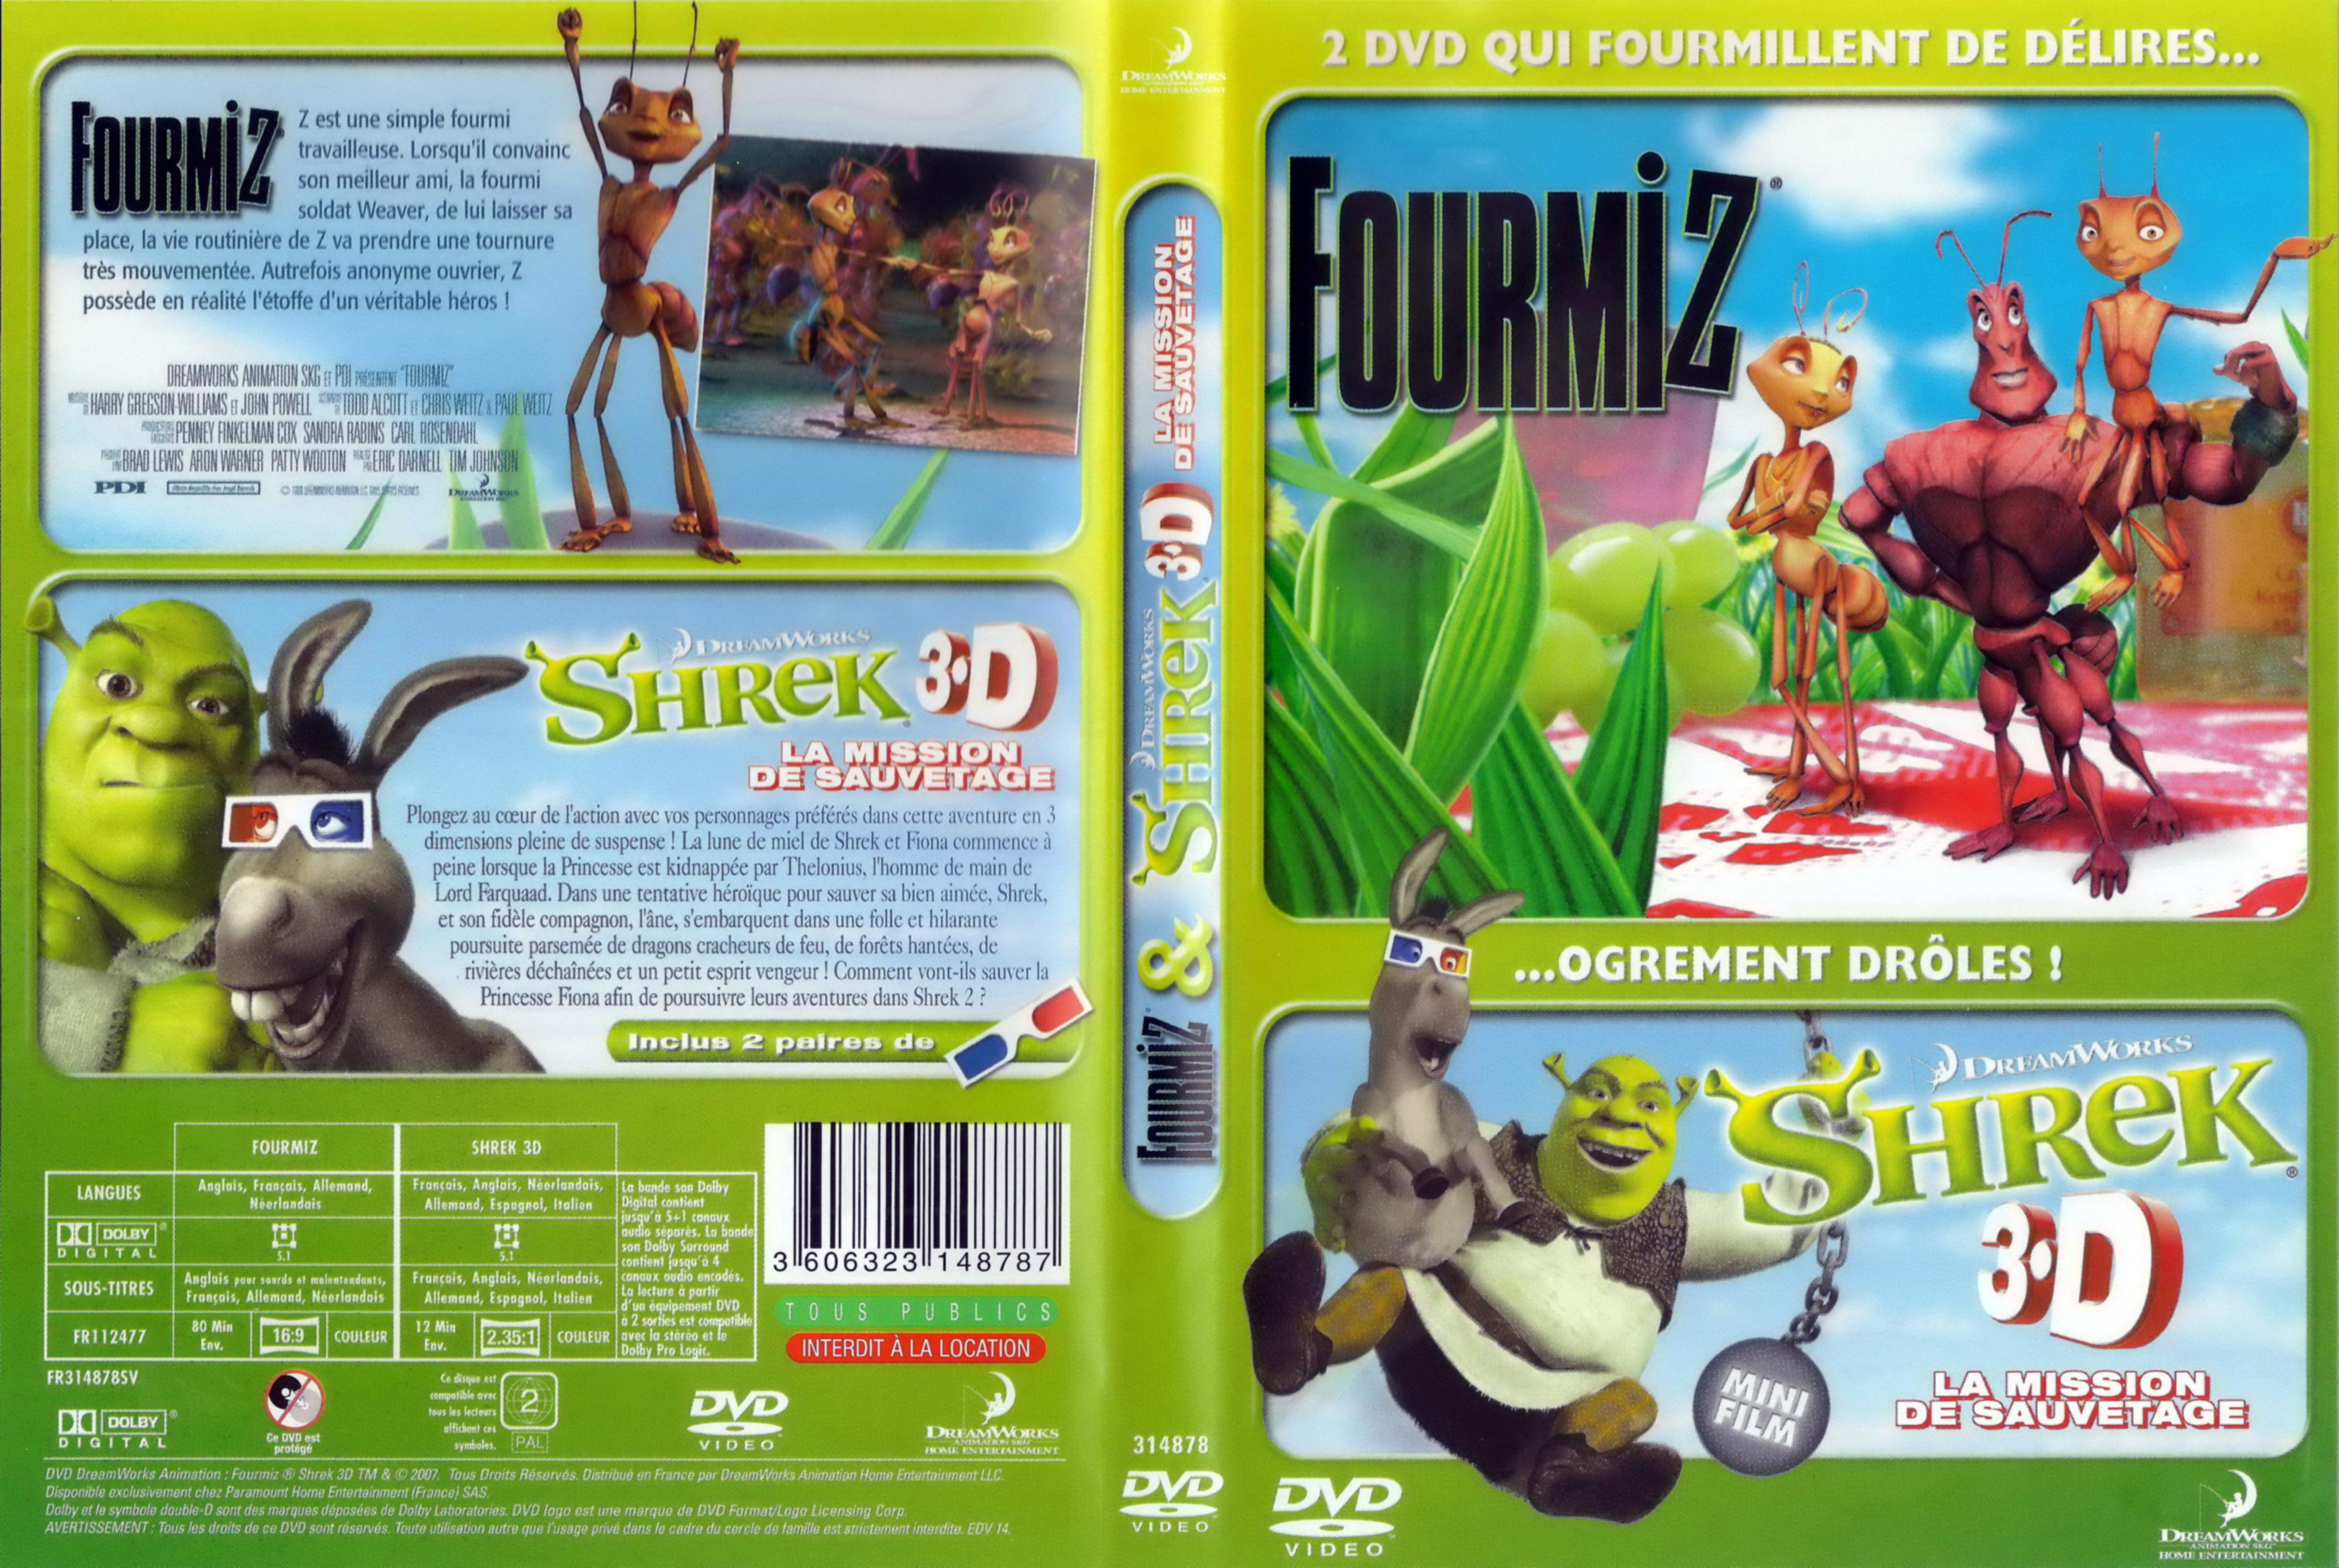 Jaquette DVD Fourmiz + Shrek 3D